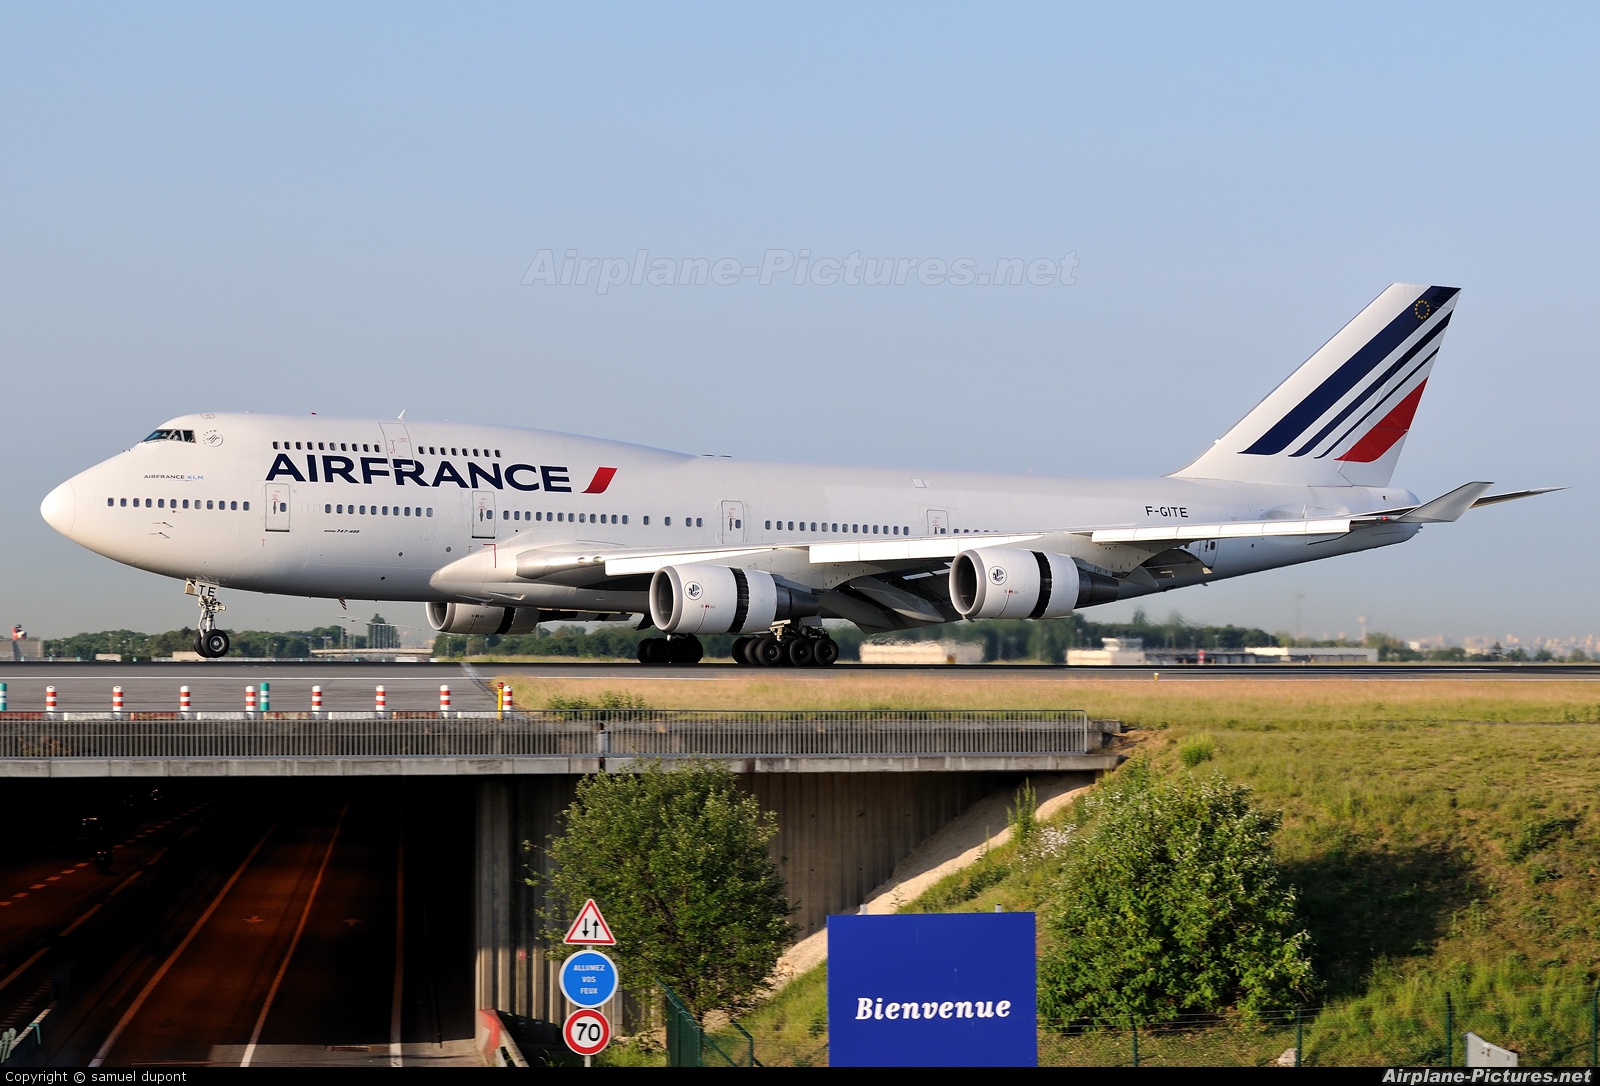 Air France F-GITE aircraft at Paris - Charles de Gaulle